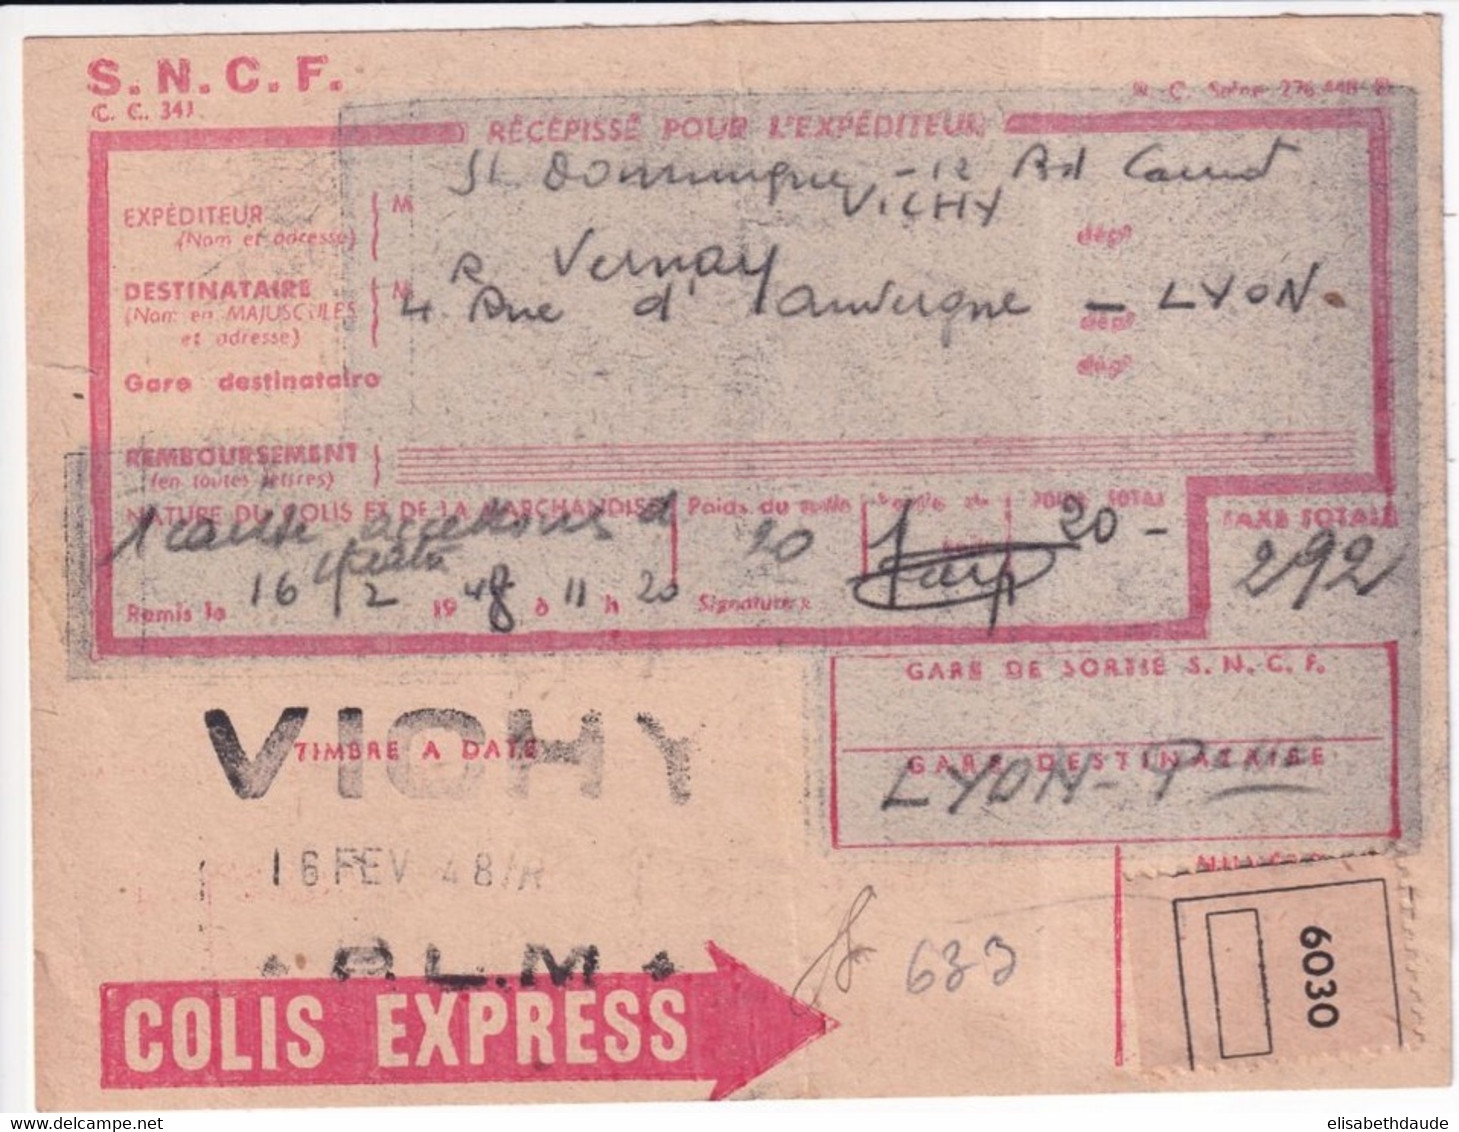 COLIS POSTAUX - 1948 - RECEPISSE COLIS EXPRESS ! De VICHY (ALLIER) => LYON - Lettres & Documents